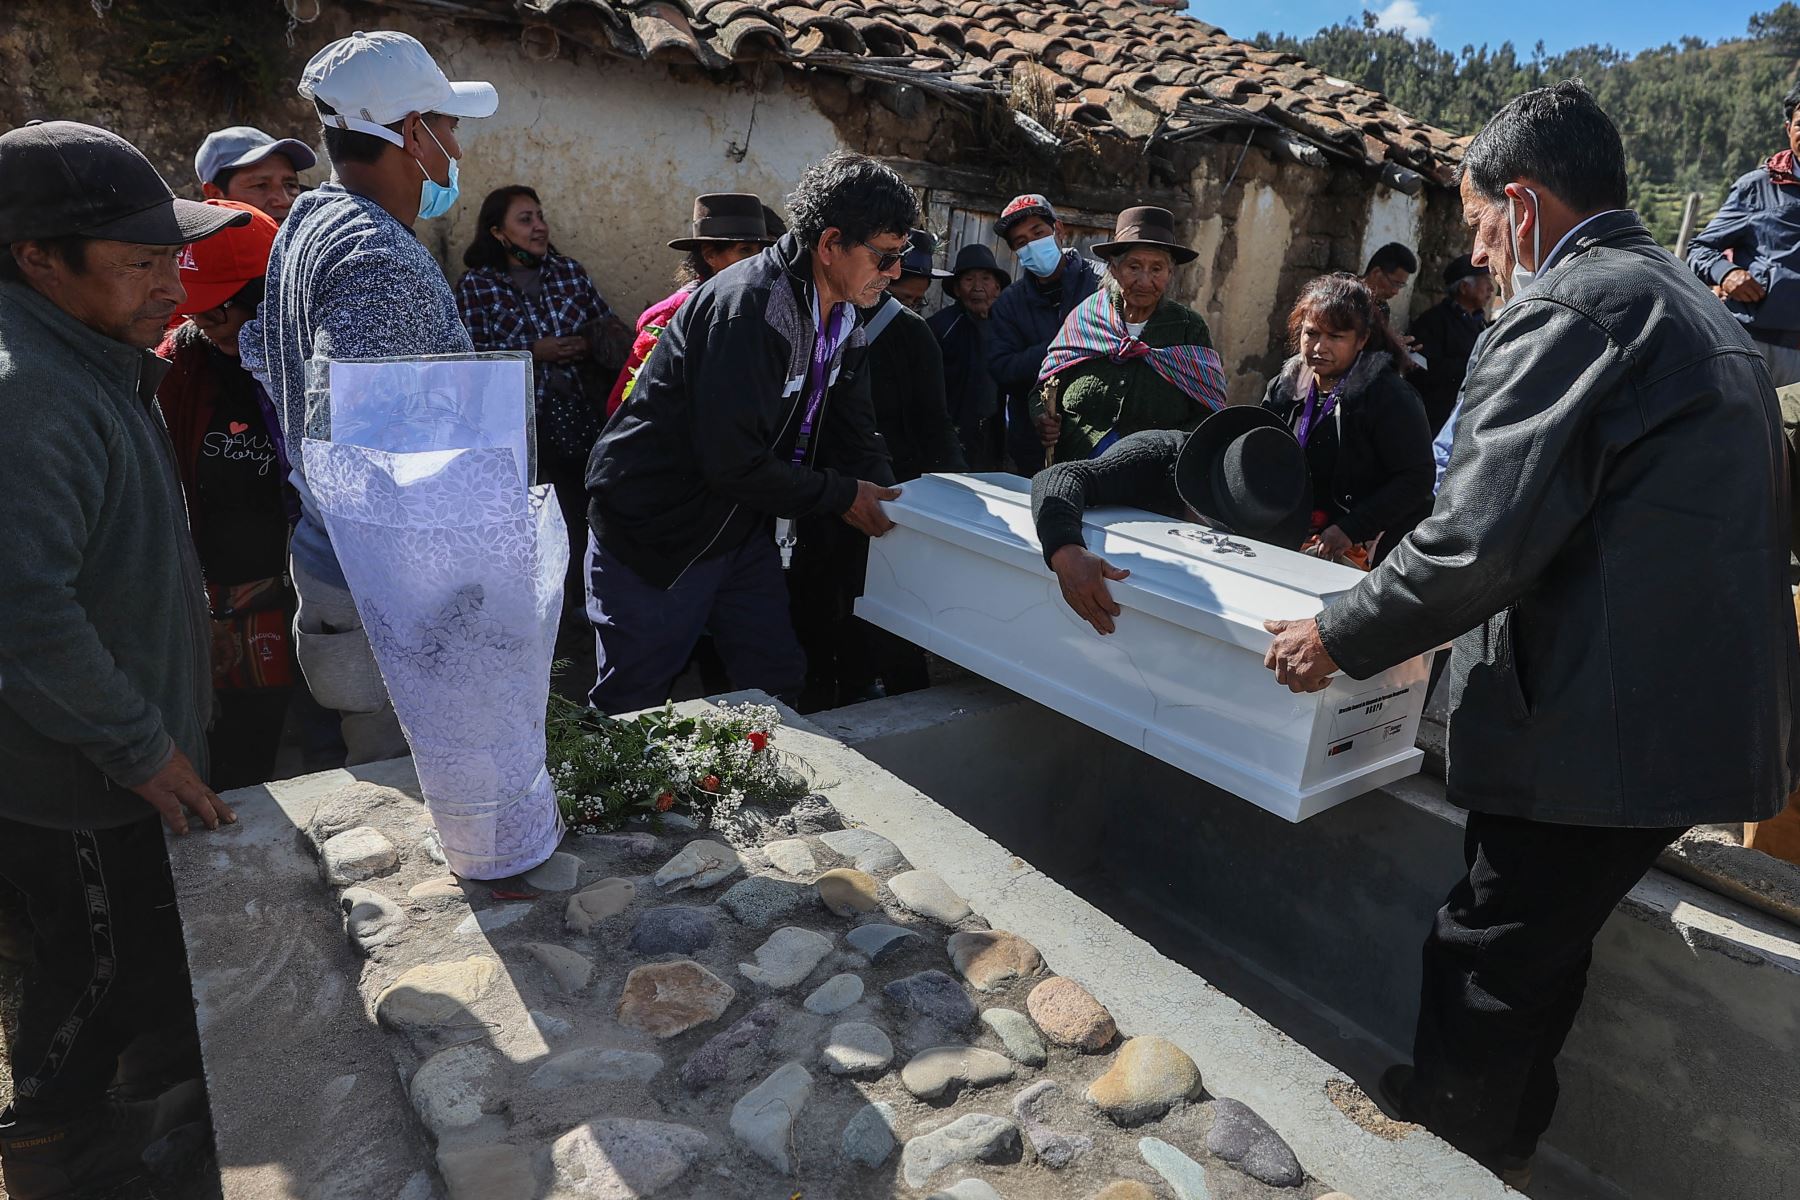 Familiares de las víctimas y las autoridades  inician el cortejo fúnebre hacía el santuario ubicado en la ex base militar de Accomarca, para darles una sepultura digna.
Foto: ANDINA/ Andrés Valle